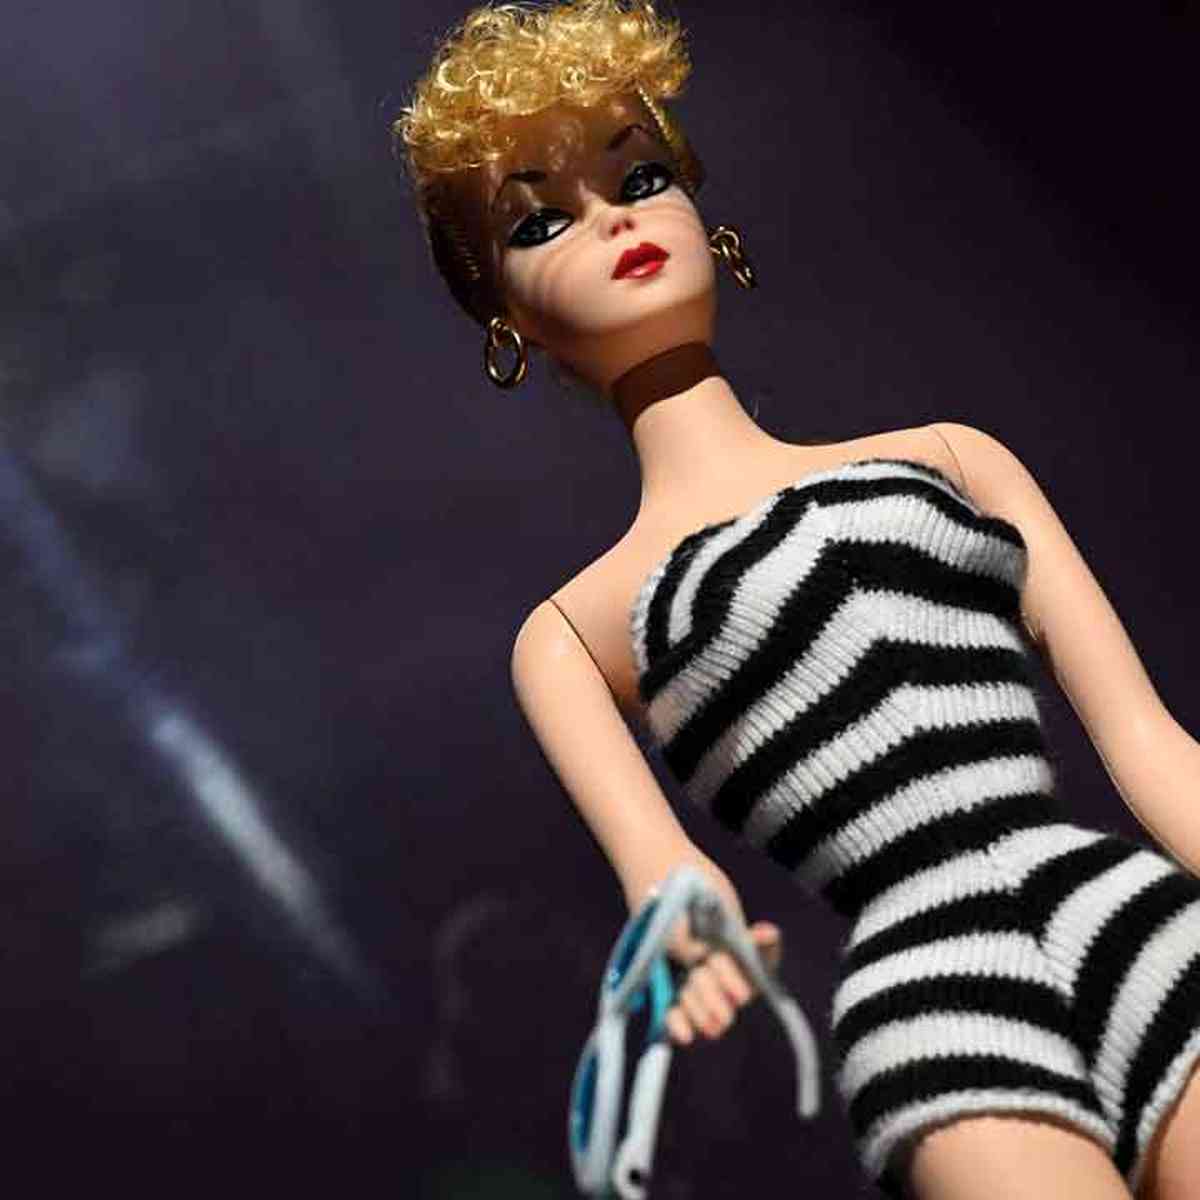 Jogos da Barbie no cabeleireiro jogos da barbie de fazer o cabelo 